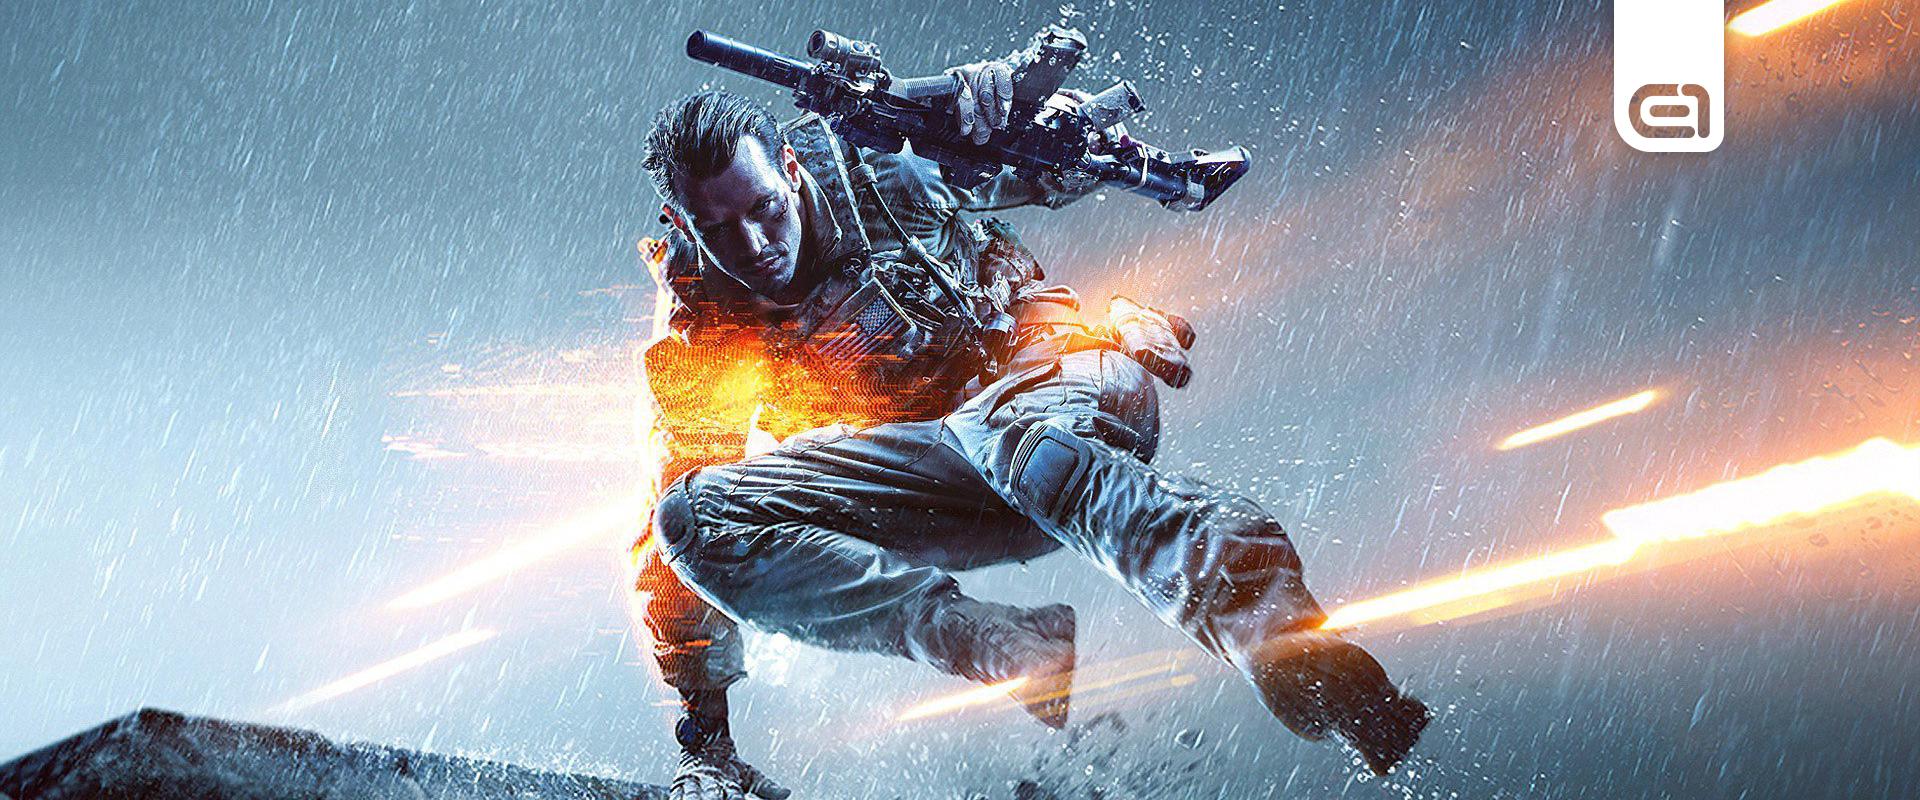 A Sony szerint a Battlefield egyszerűen nem tud lépést tartani a CoD-dal